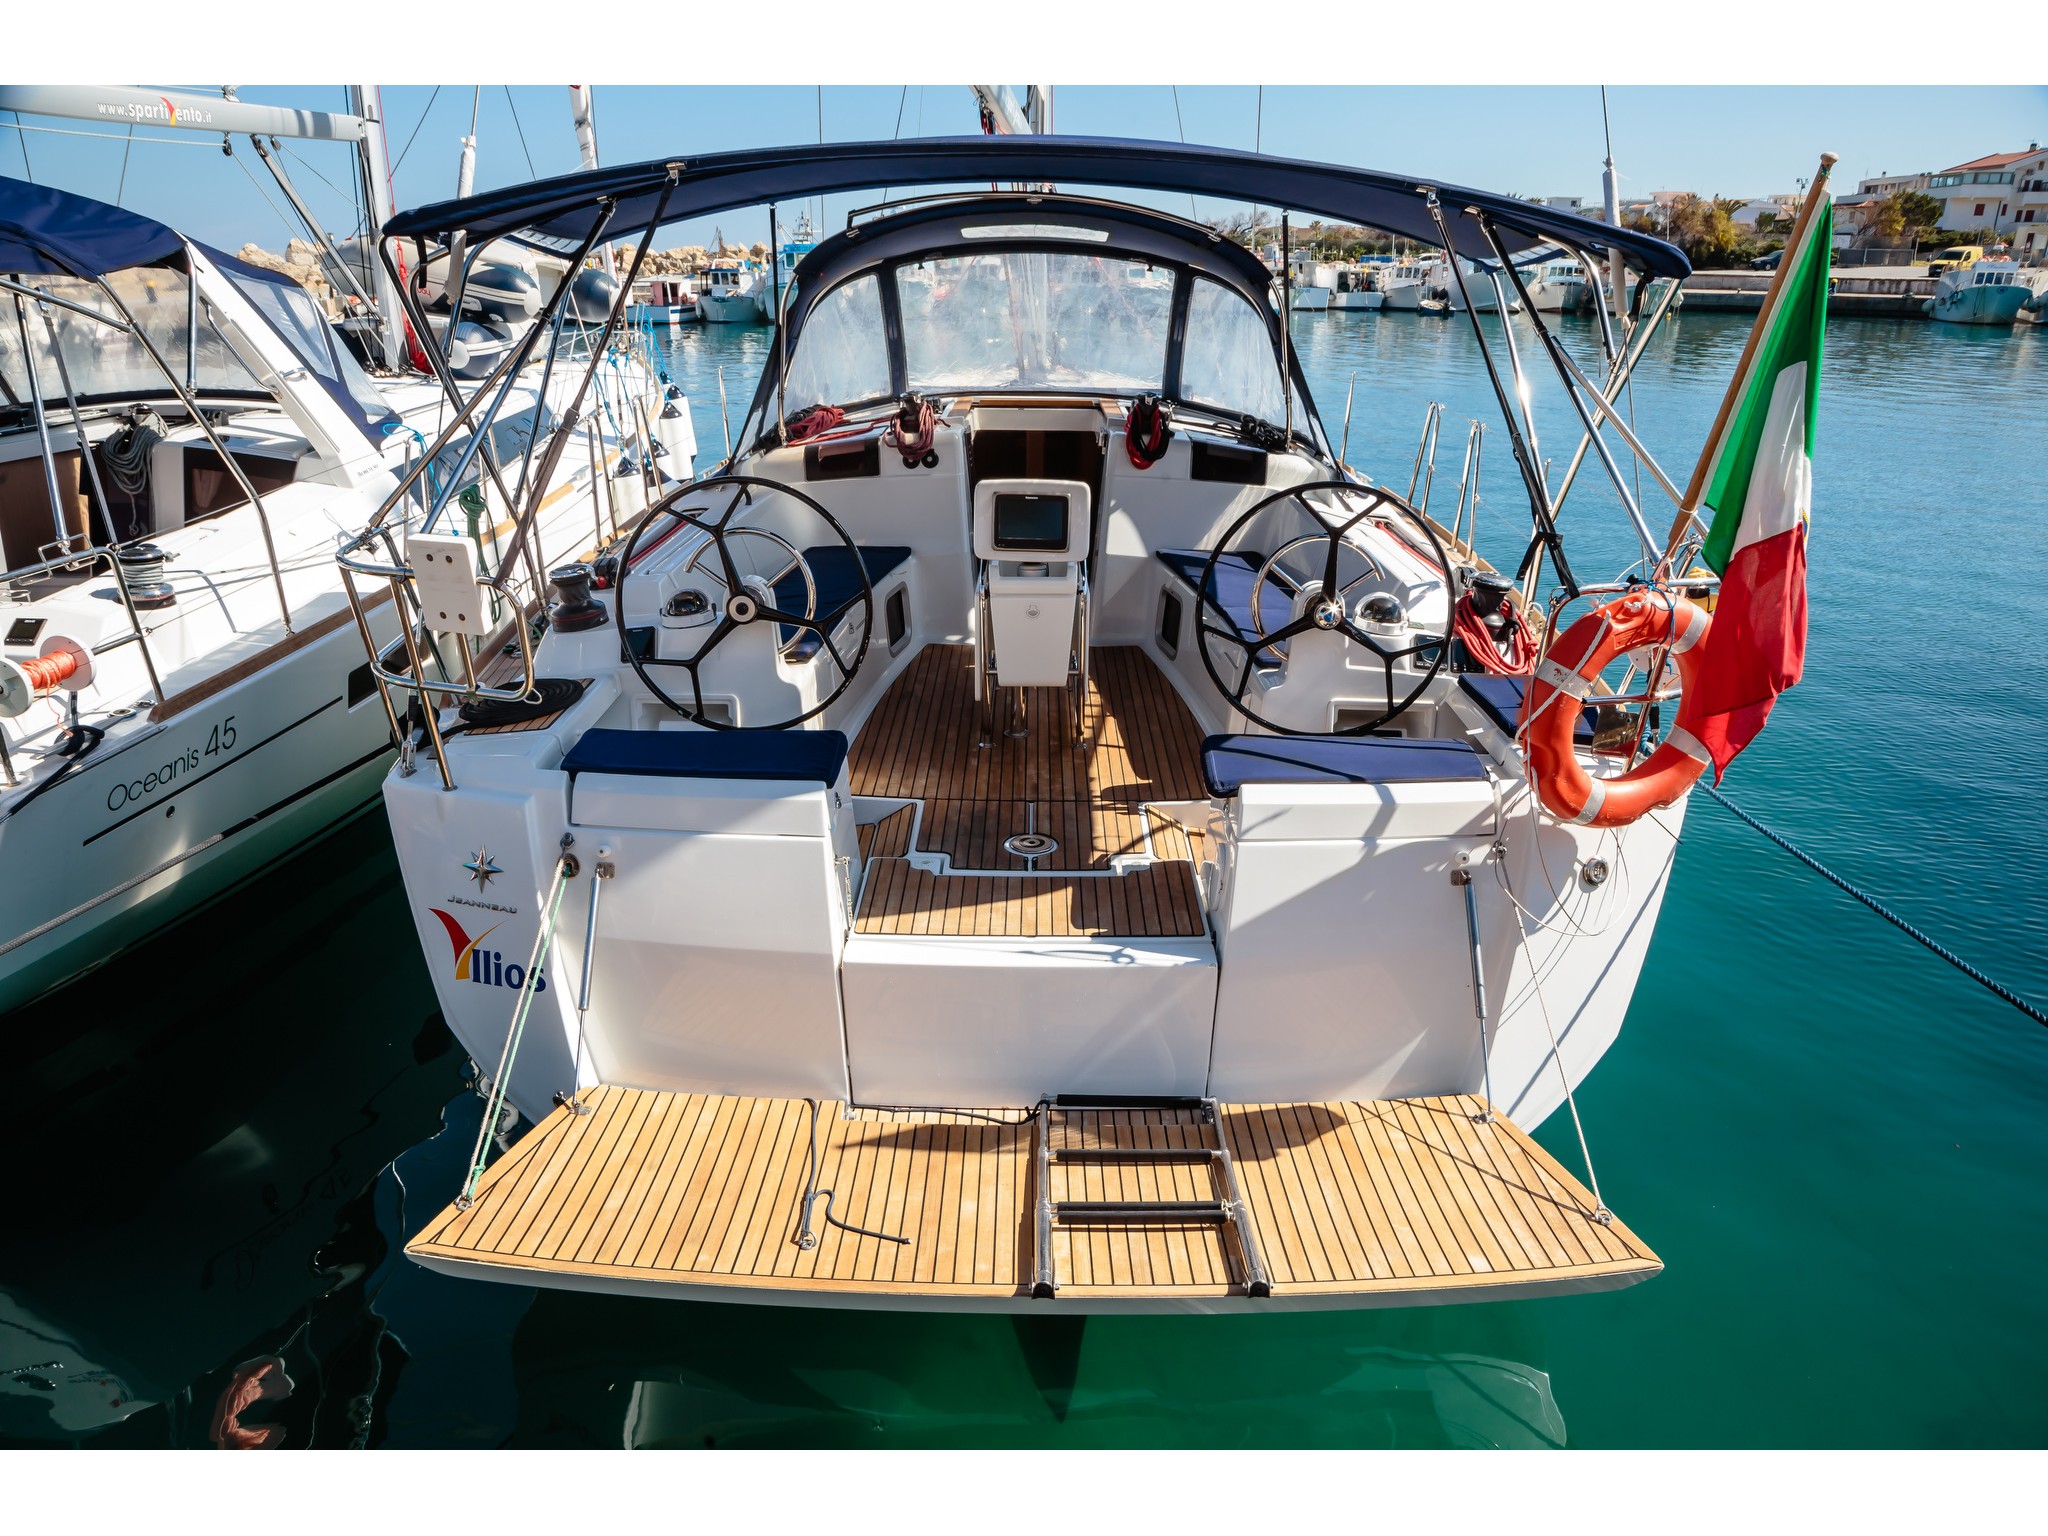 Sun Odyssey 449 - Yacht Charter Capo d'Orlando & Boat hire in Italy Sicily Aeolian Islands Capo d'Orlando Capo d'Orlando Marina 2